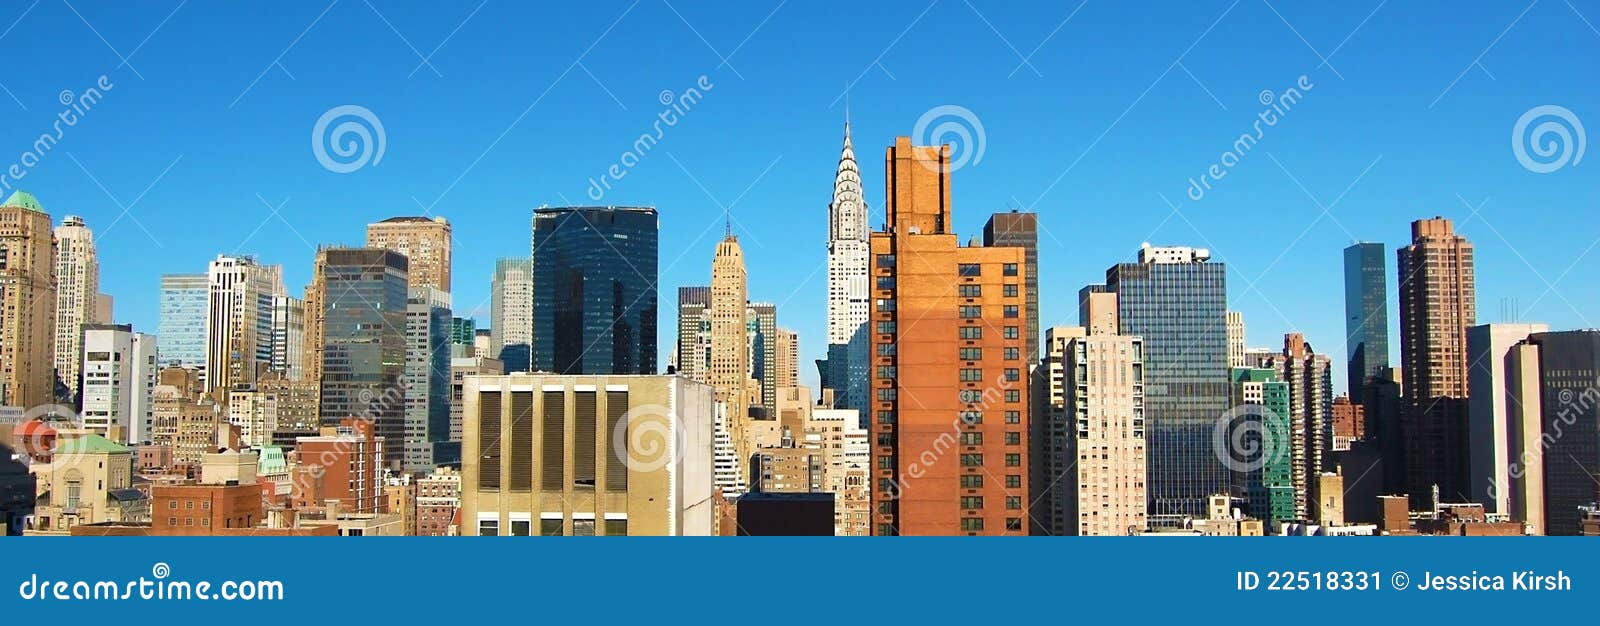 new york city daytime skyline panoramic